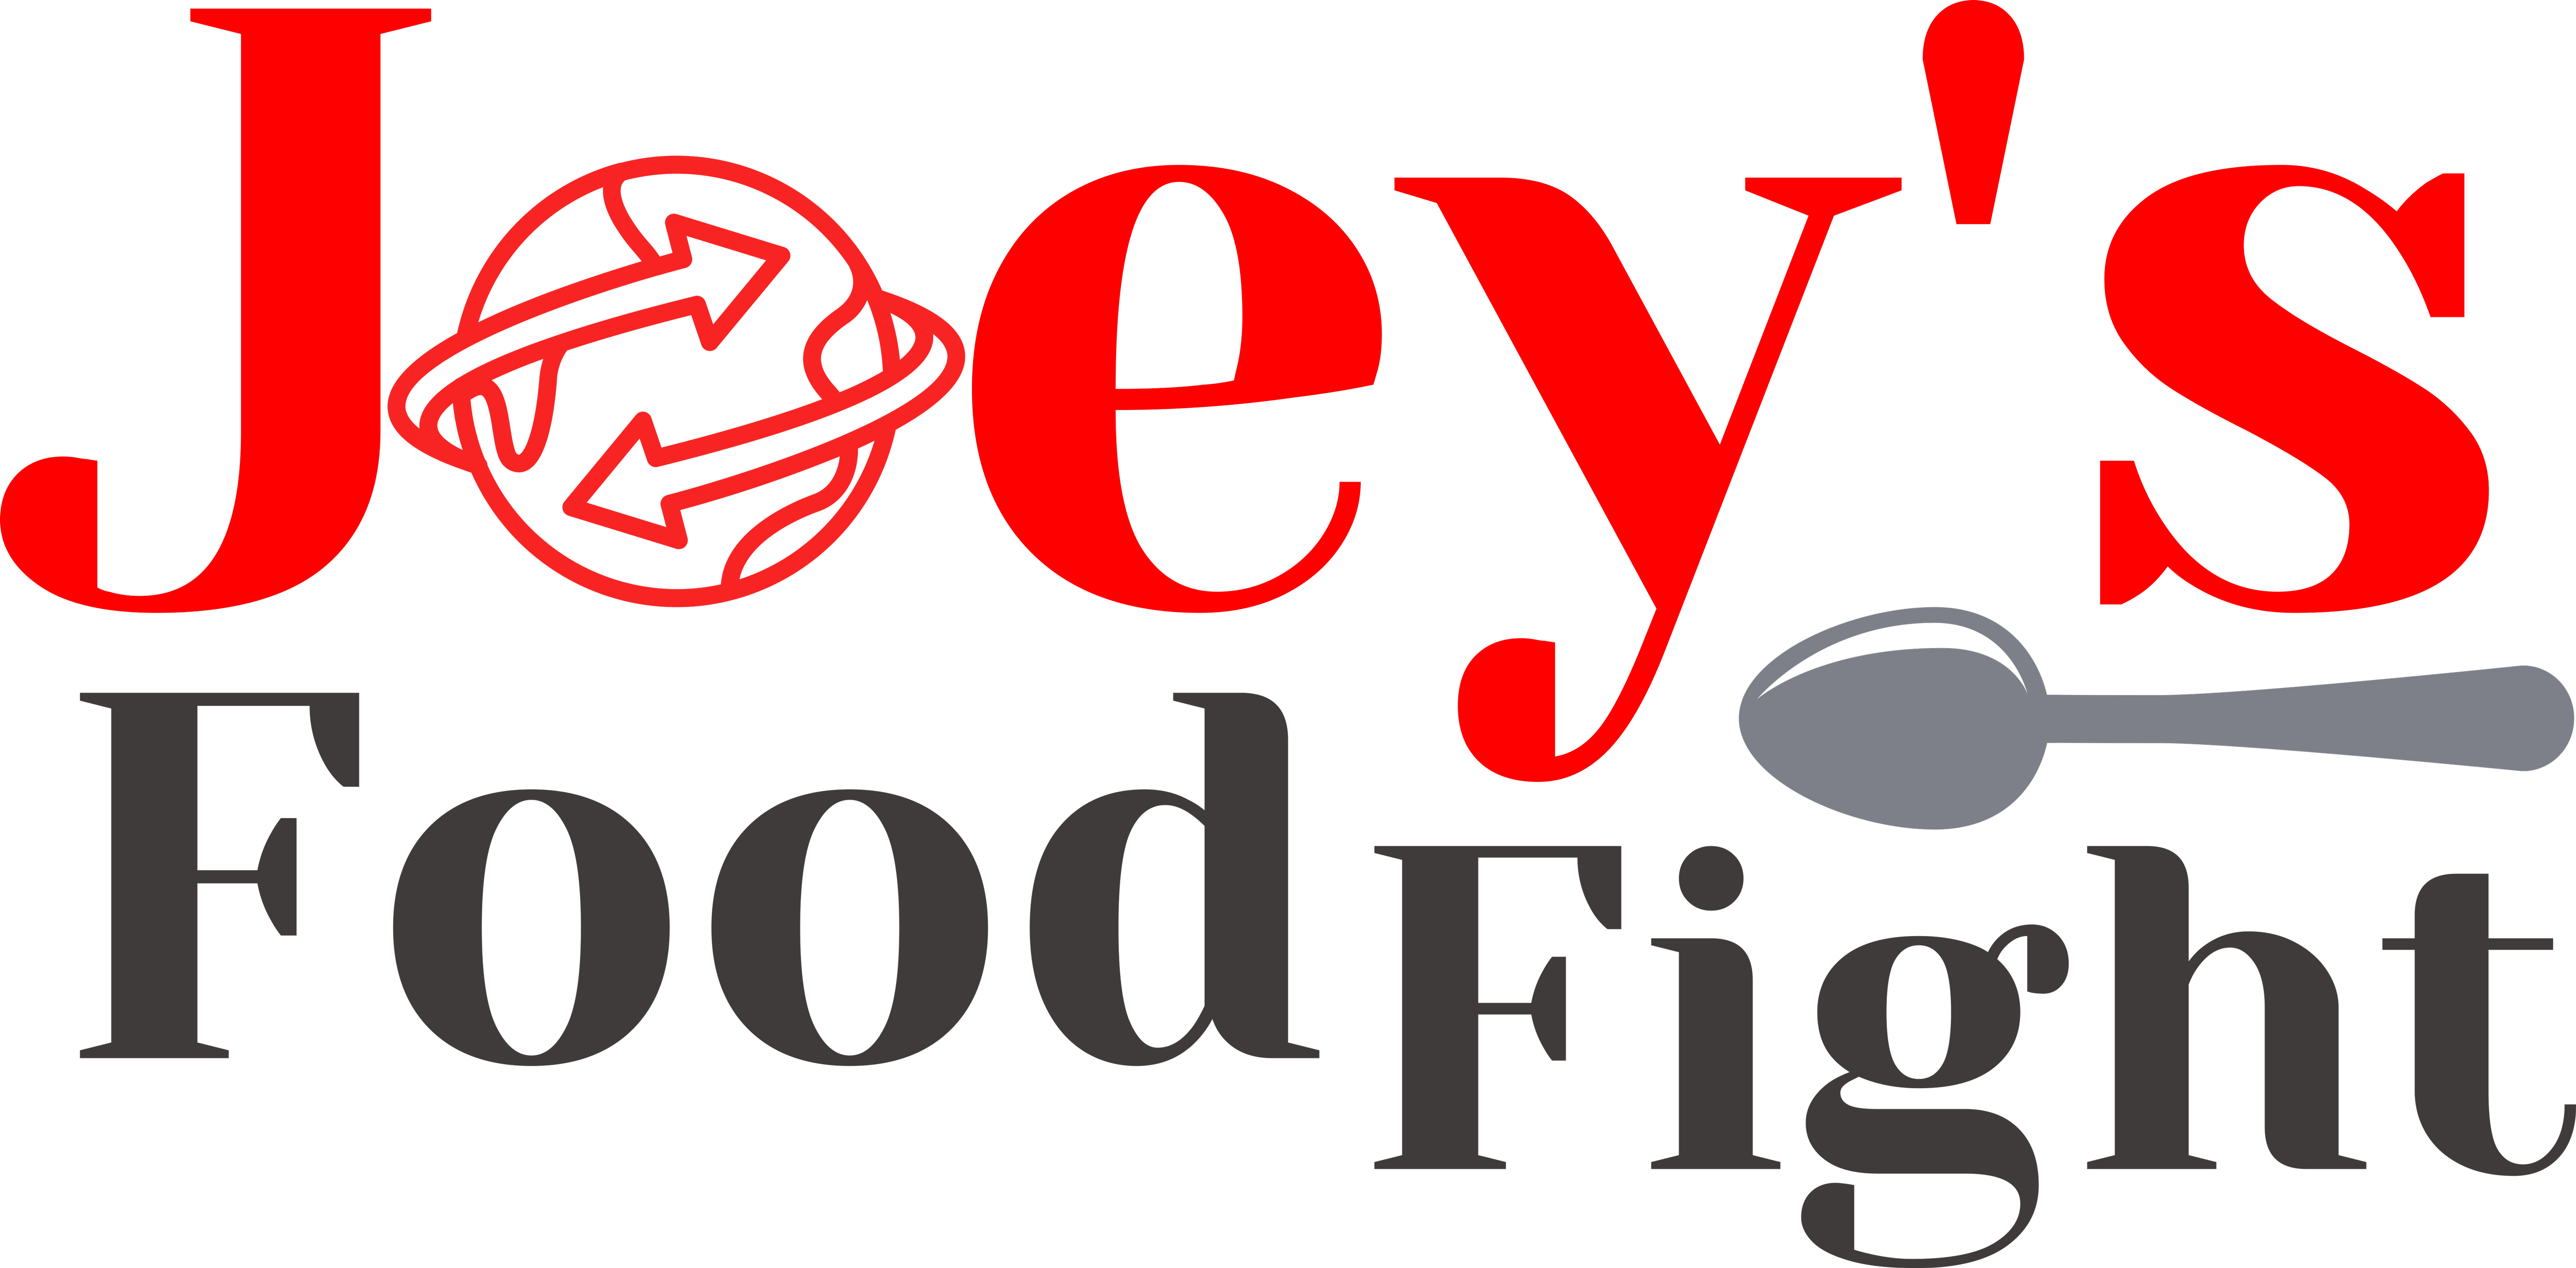 Joeysfoodfight